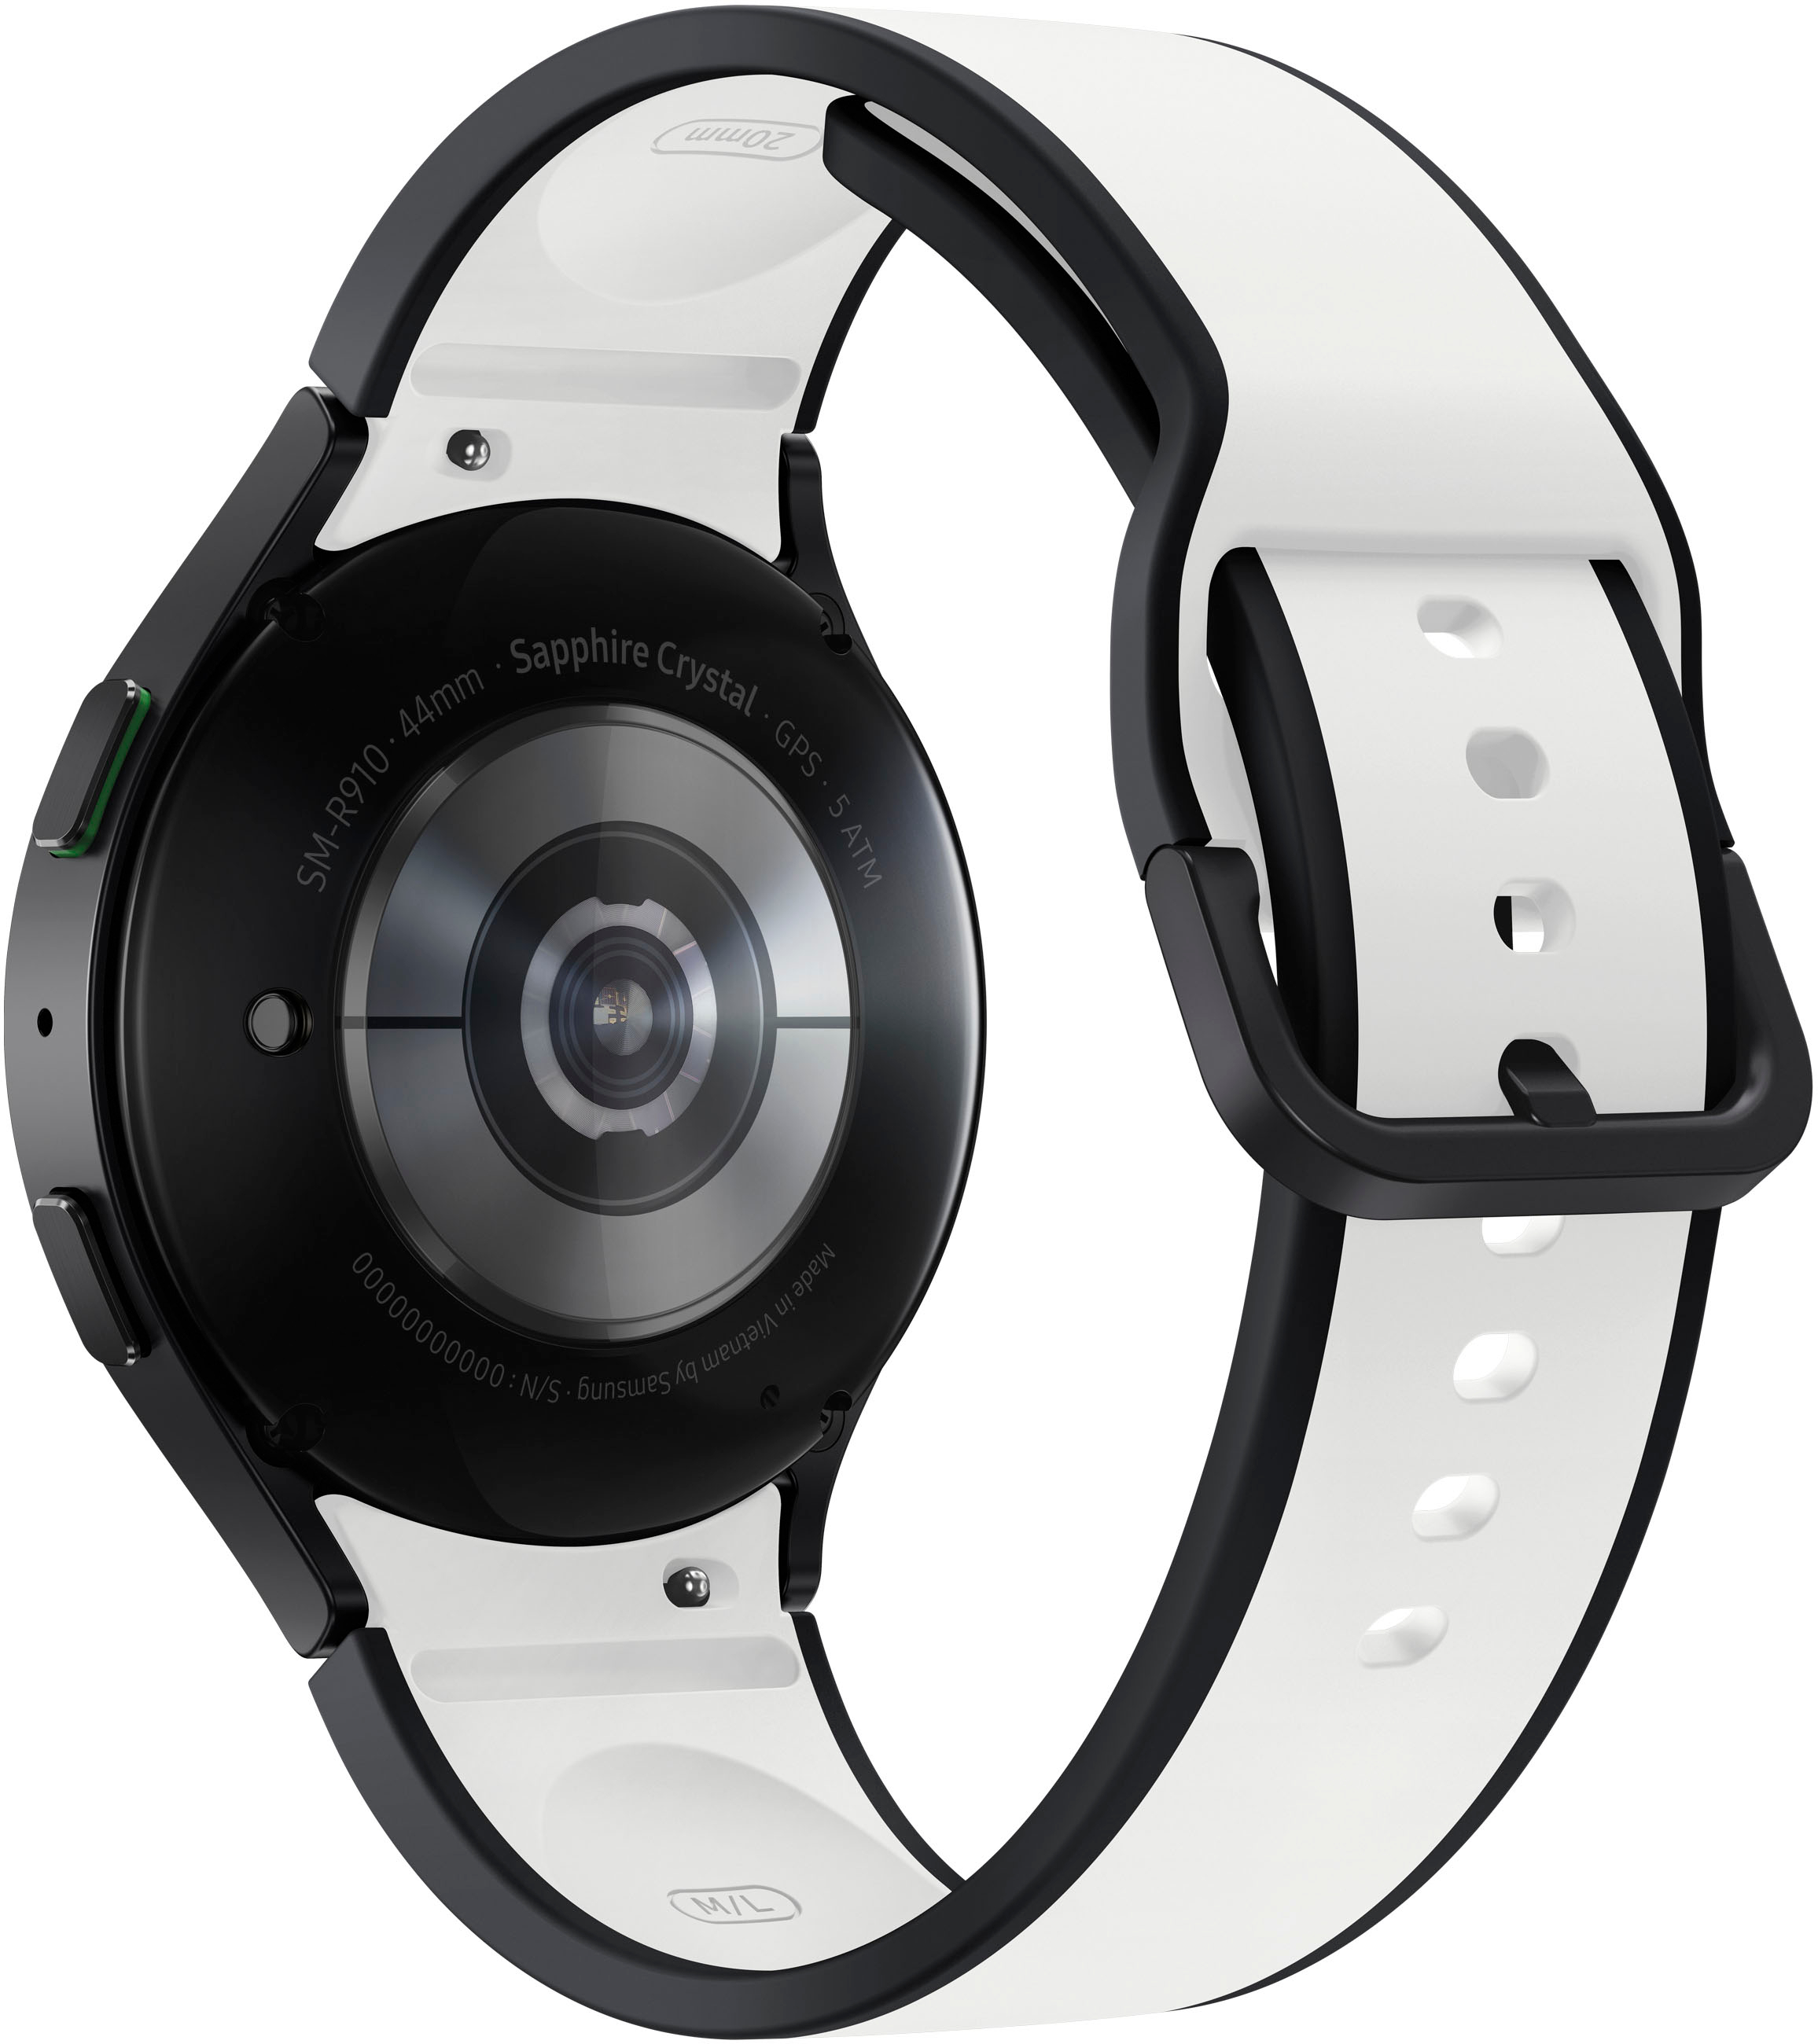 Samsung Galaxy Watch5 Aluminum Smartwatch 44mm BT Graphite SM-R910NZAAXAA -  Best Buy